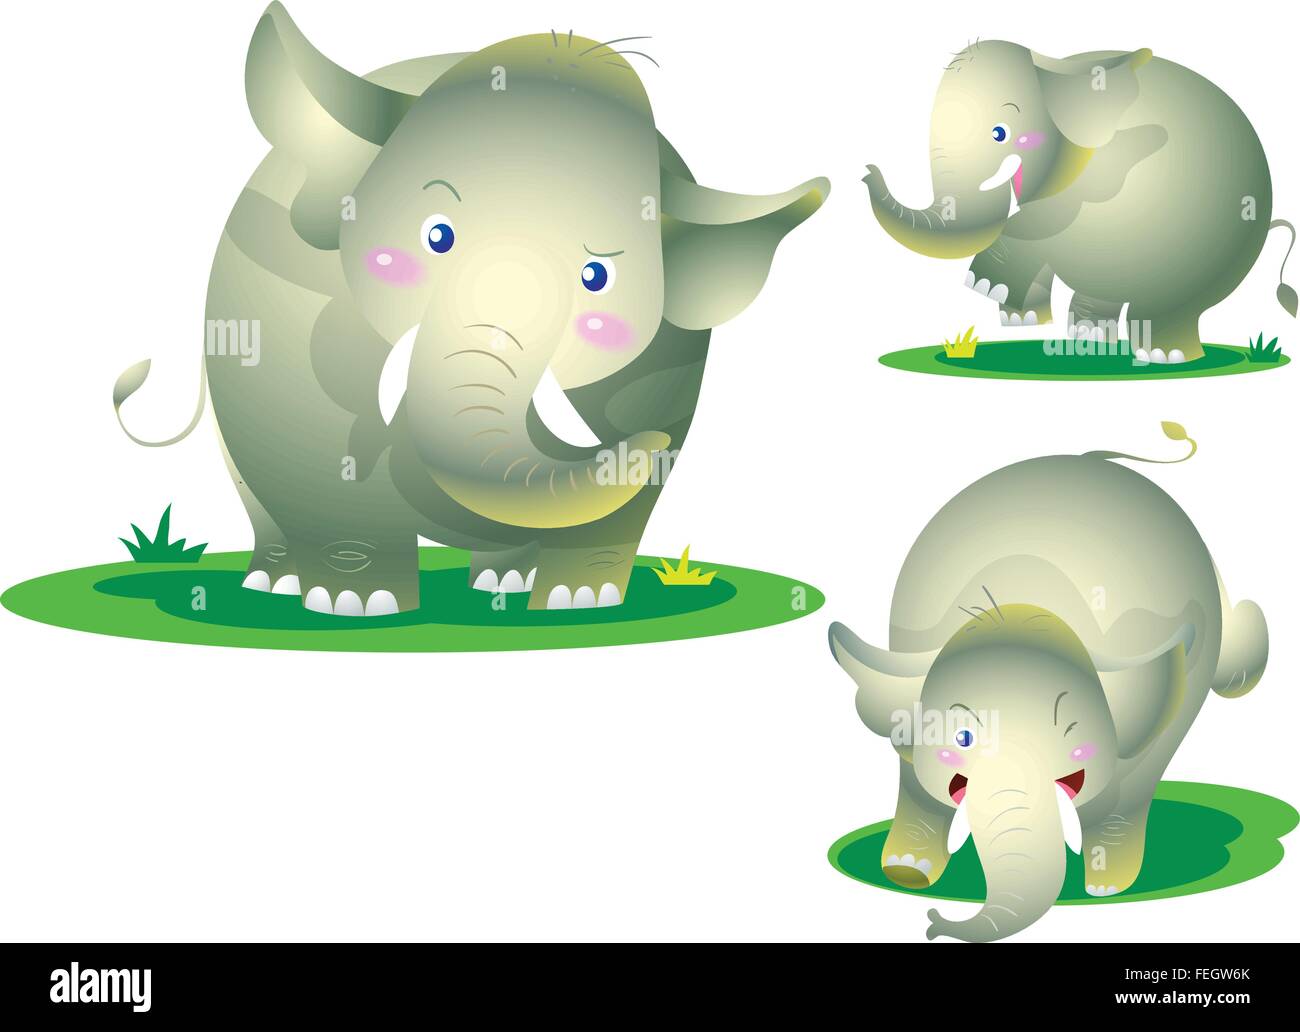 Éléphant mignon de nombreuses actions coquines posent l'émotion.cheerful baby elephant avec diverses actions.vector cartoon character of cute elephant éléphant mignon. Illustration de Vecteur